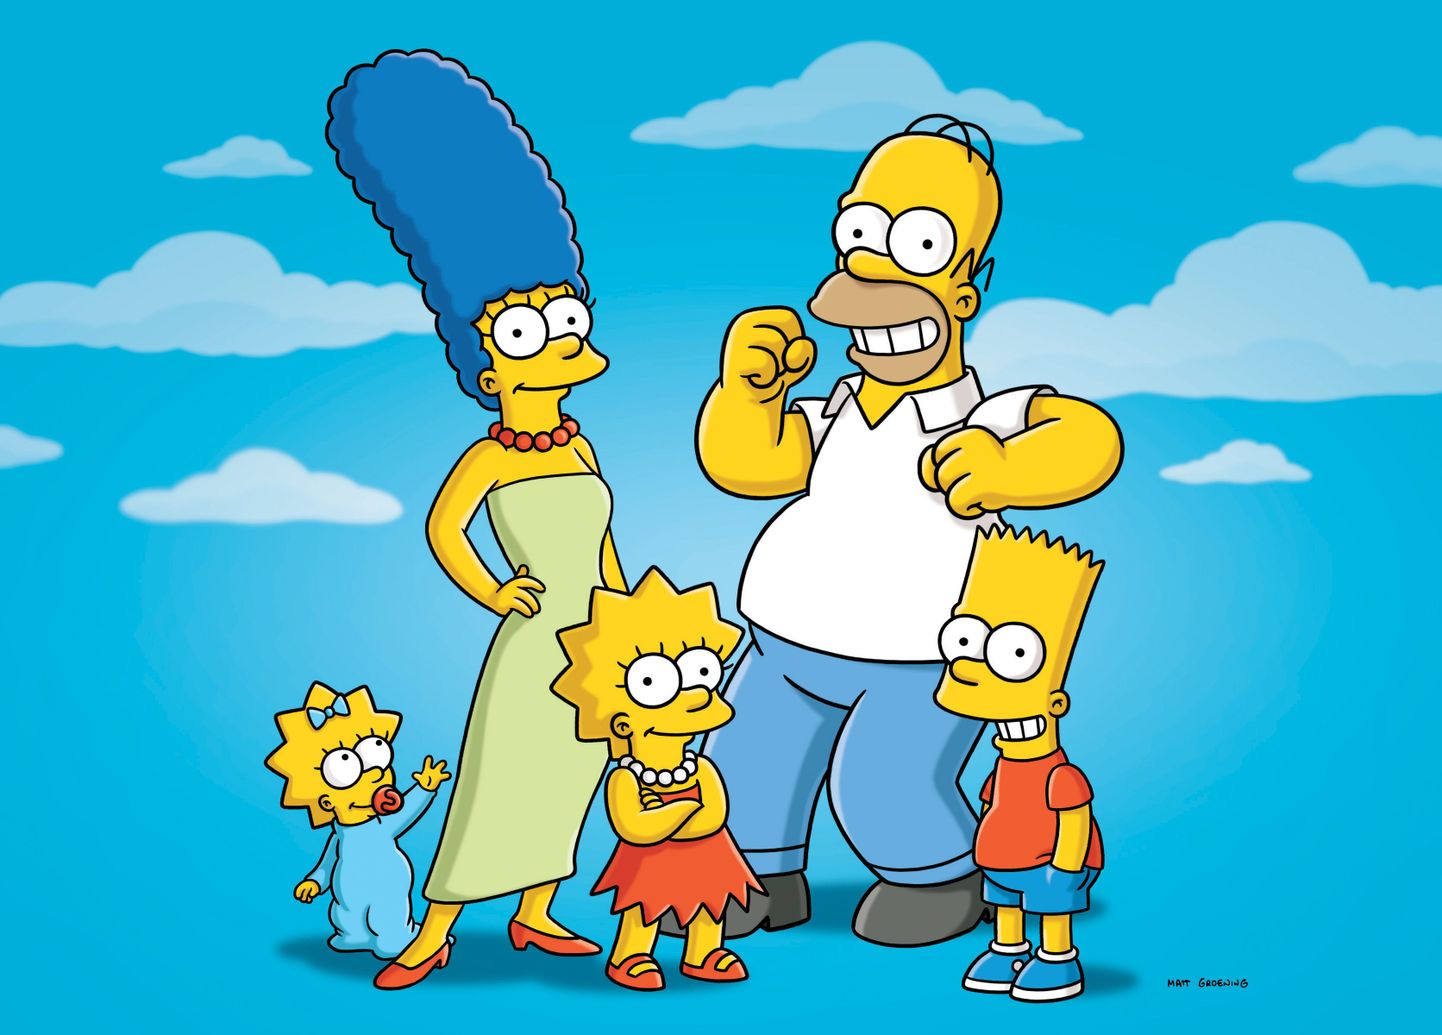 Animasarja «Simpsonid» peategelased vasakult alates  - Maggie, Marge, Lisa, Homerja Bart